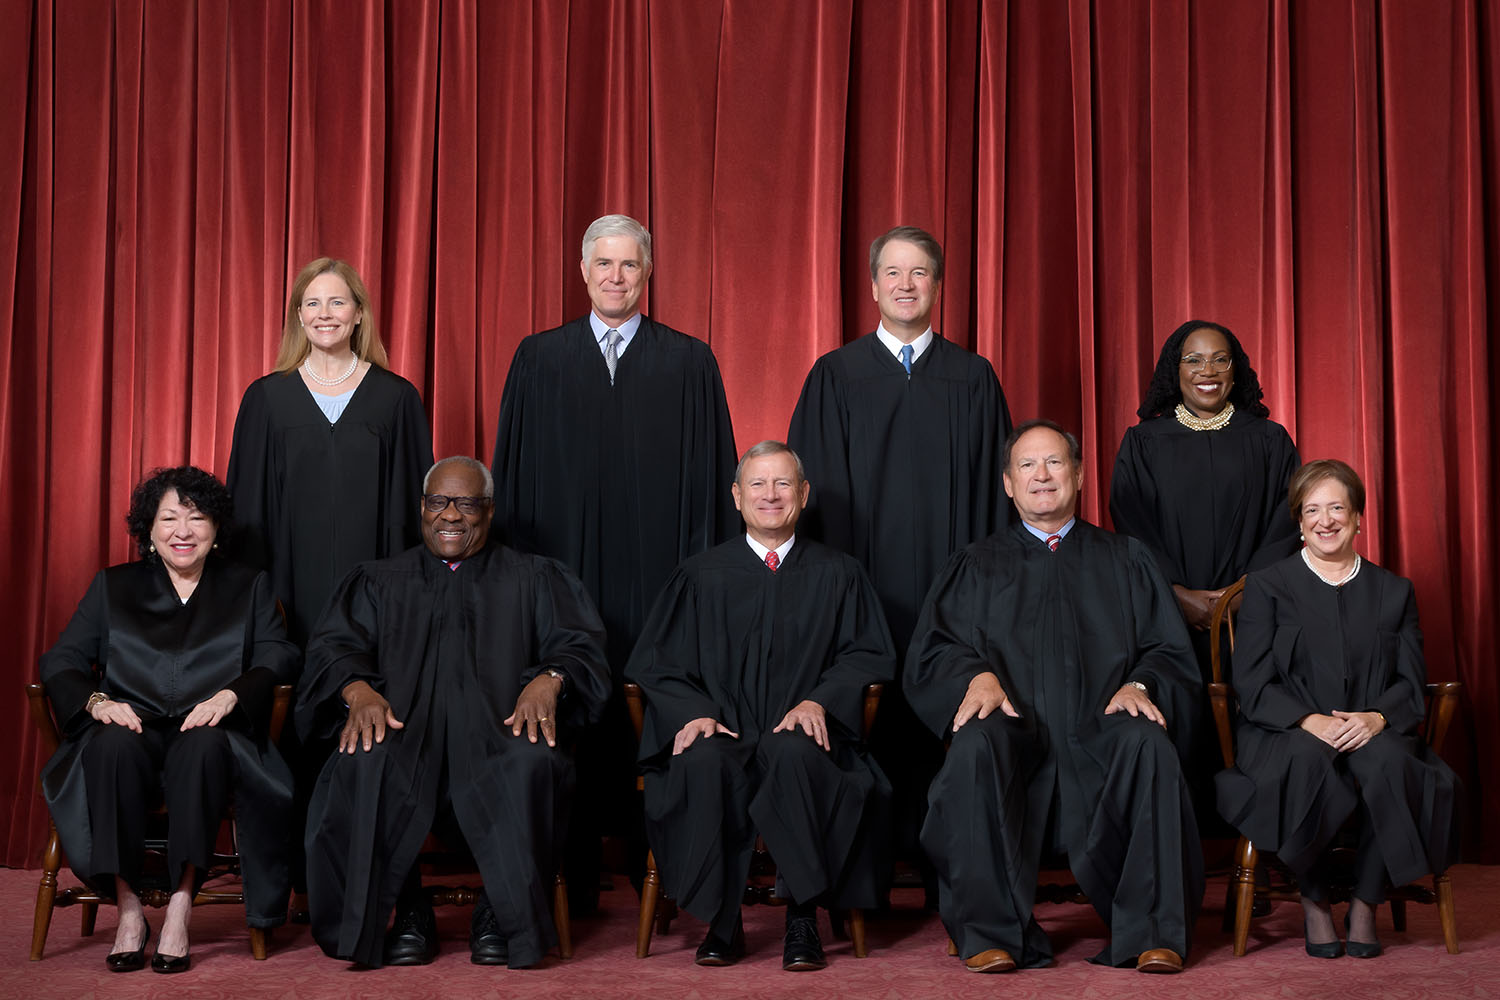 The Supreme Court via supremecourt.gov